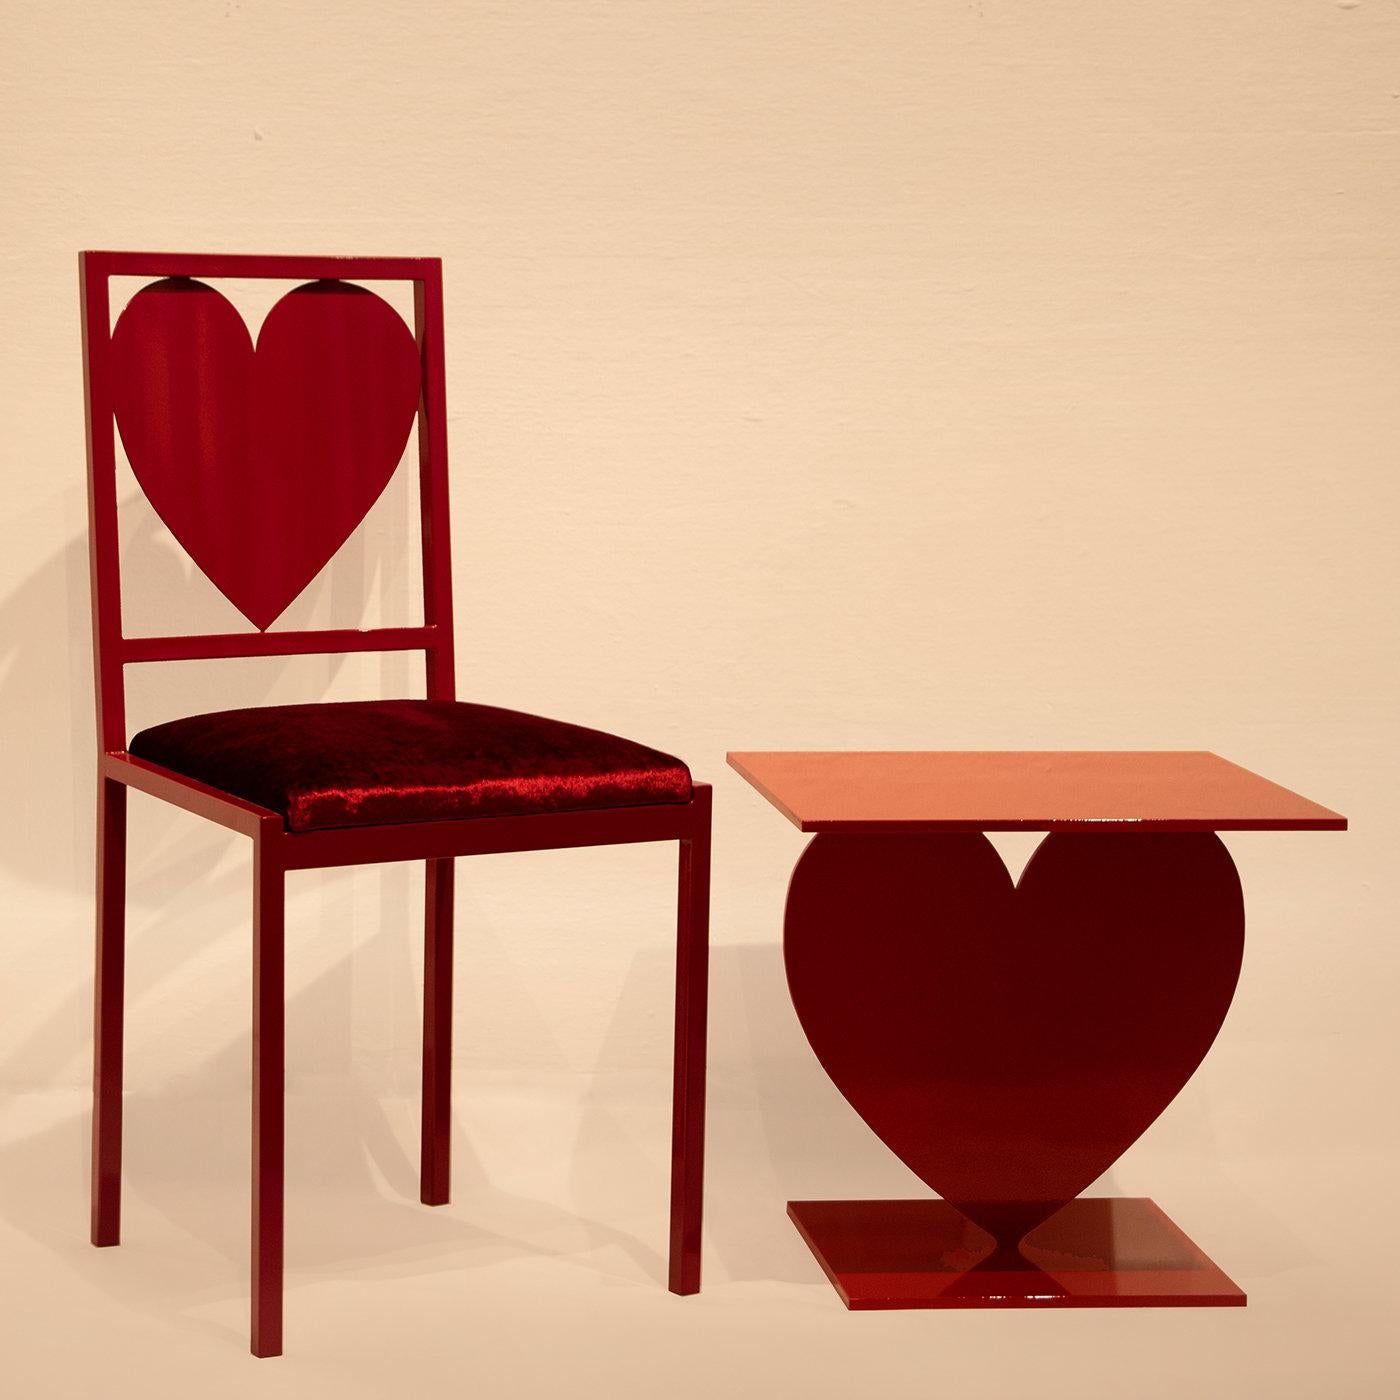 Dotée d'un design élégant qui la rend à la fois esthétique et fonctionnelle, cette chaise de la collection Imperfect Love s'imposera dans un bureau à domicile, une salle à manger ou une chambre contemporaine et éclectique. D'un rouge éclatant et